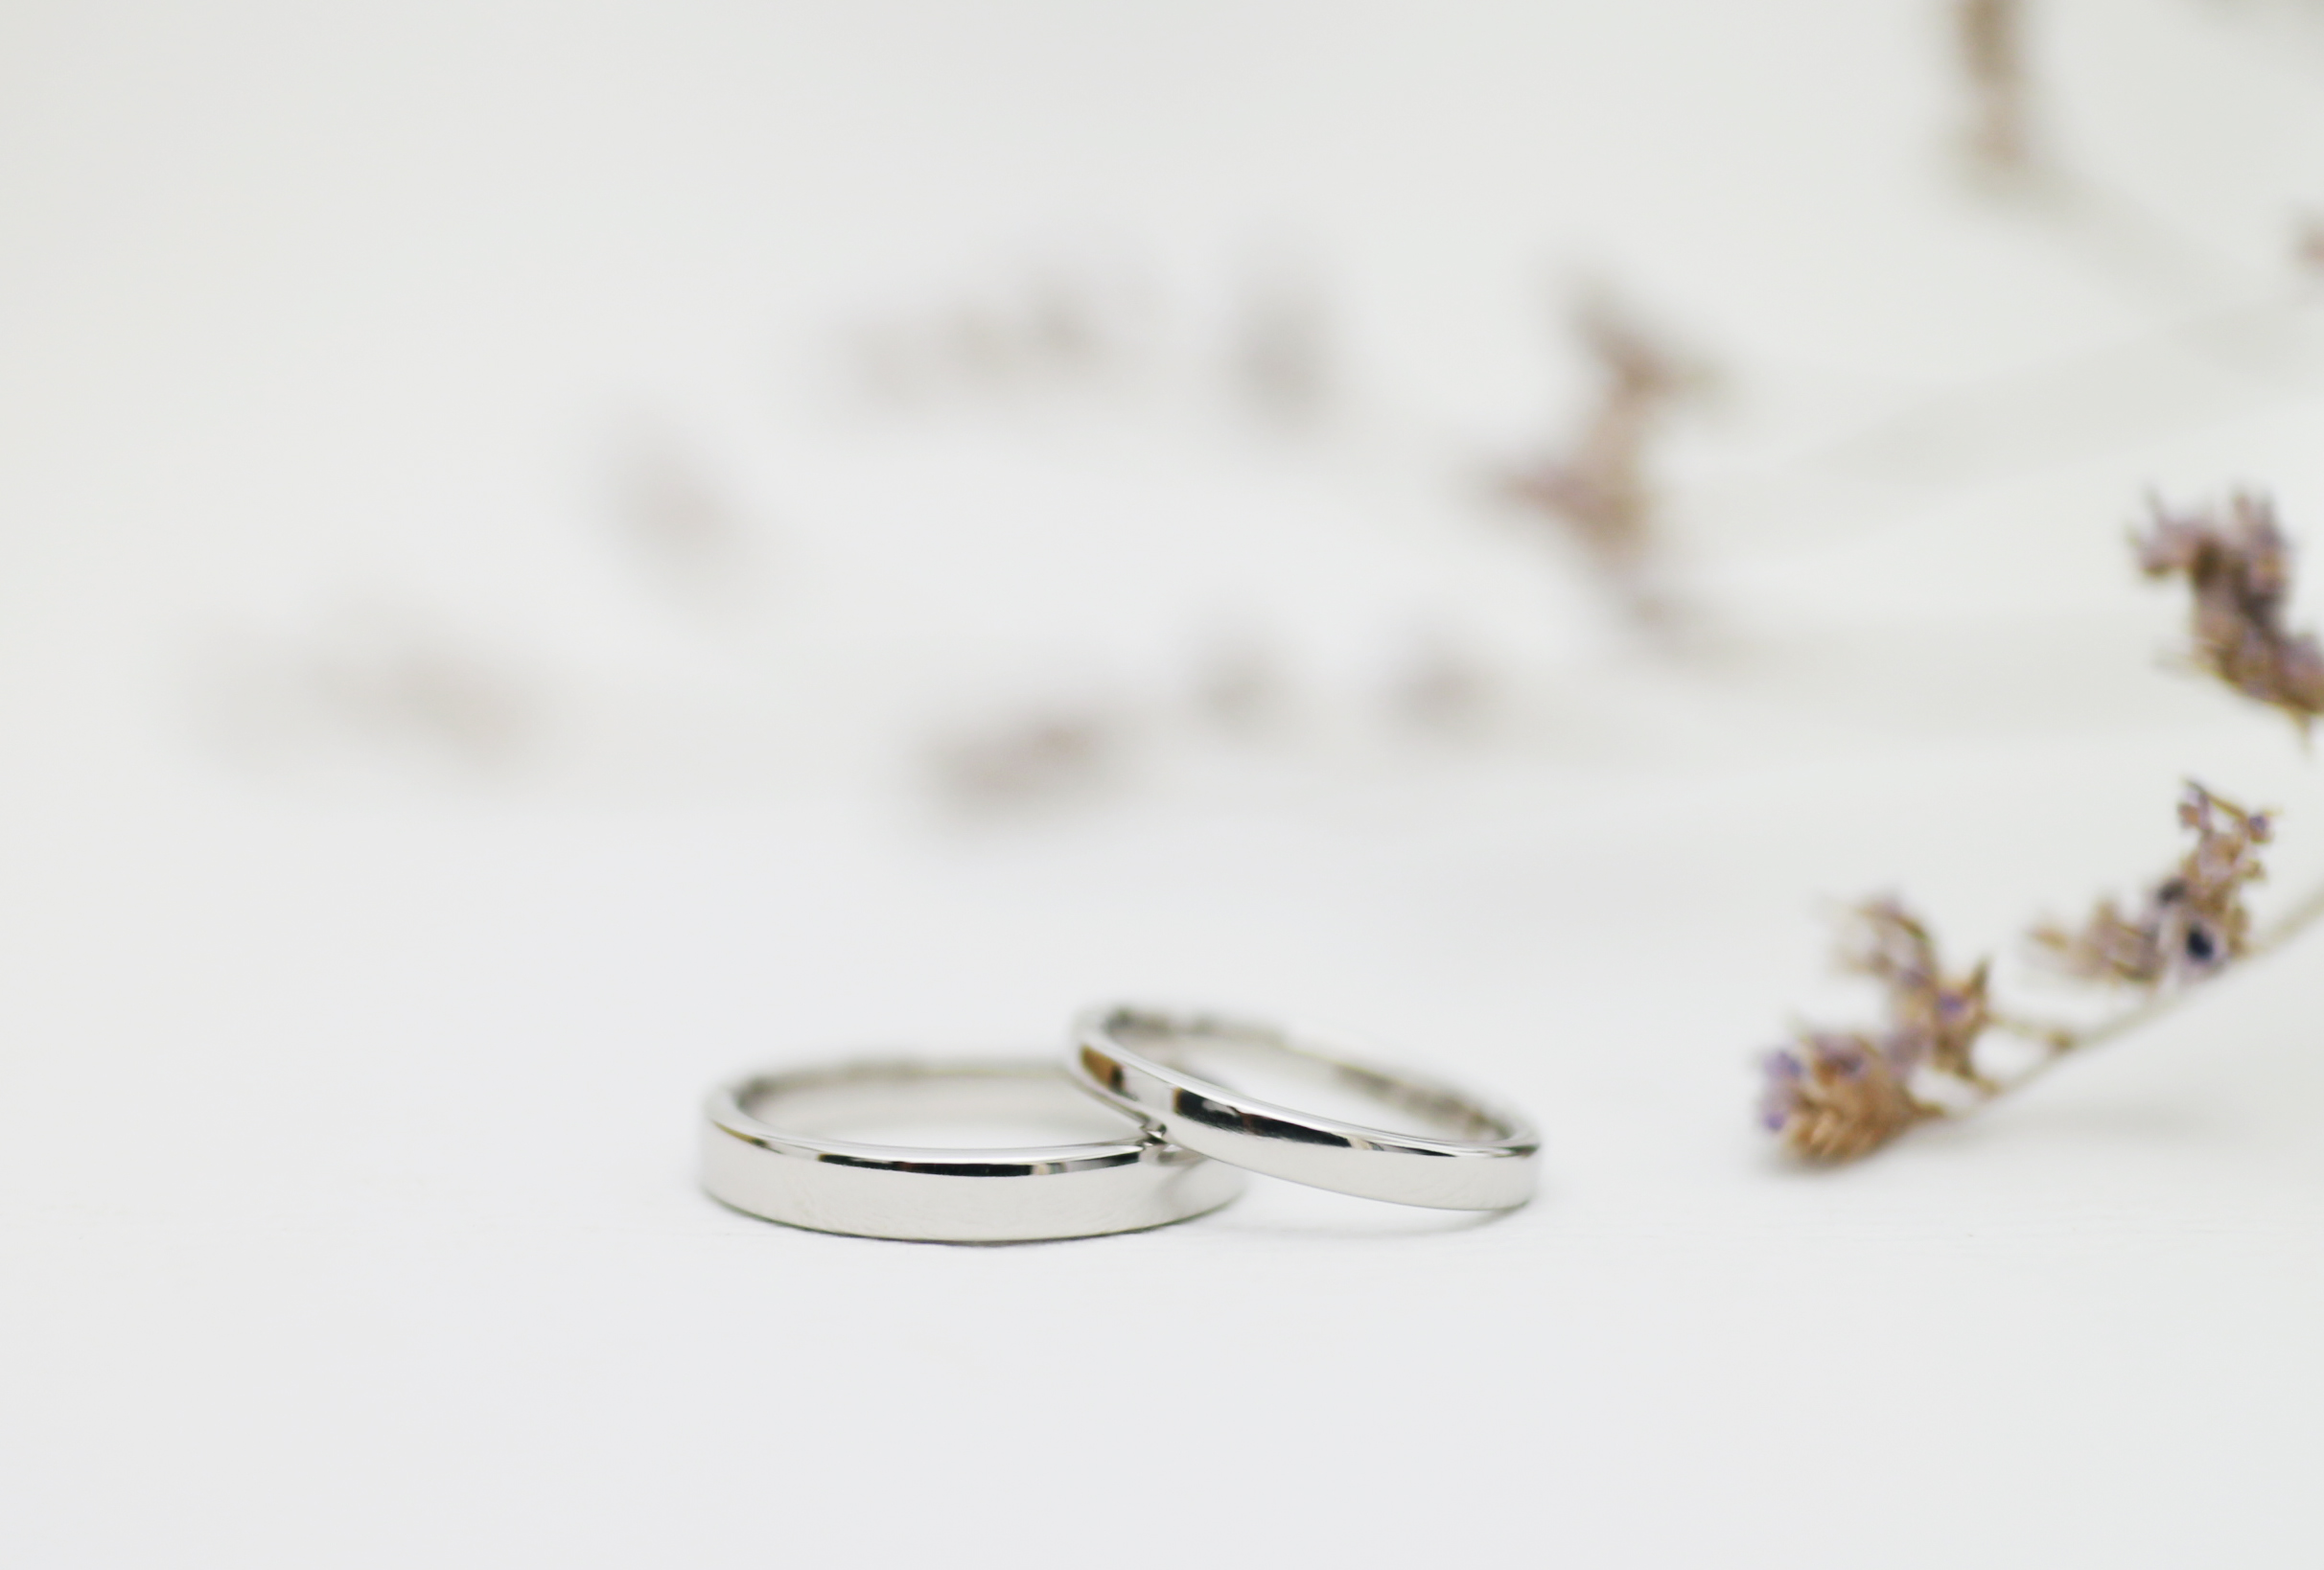 シンプルな手作り結婚指輪